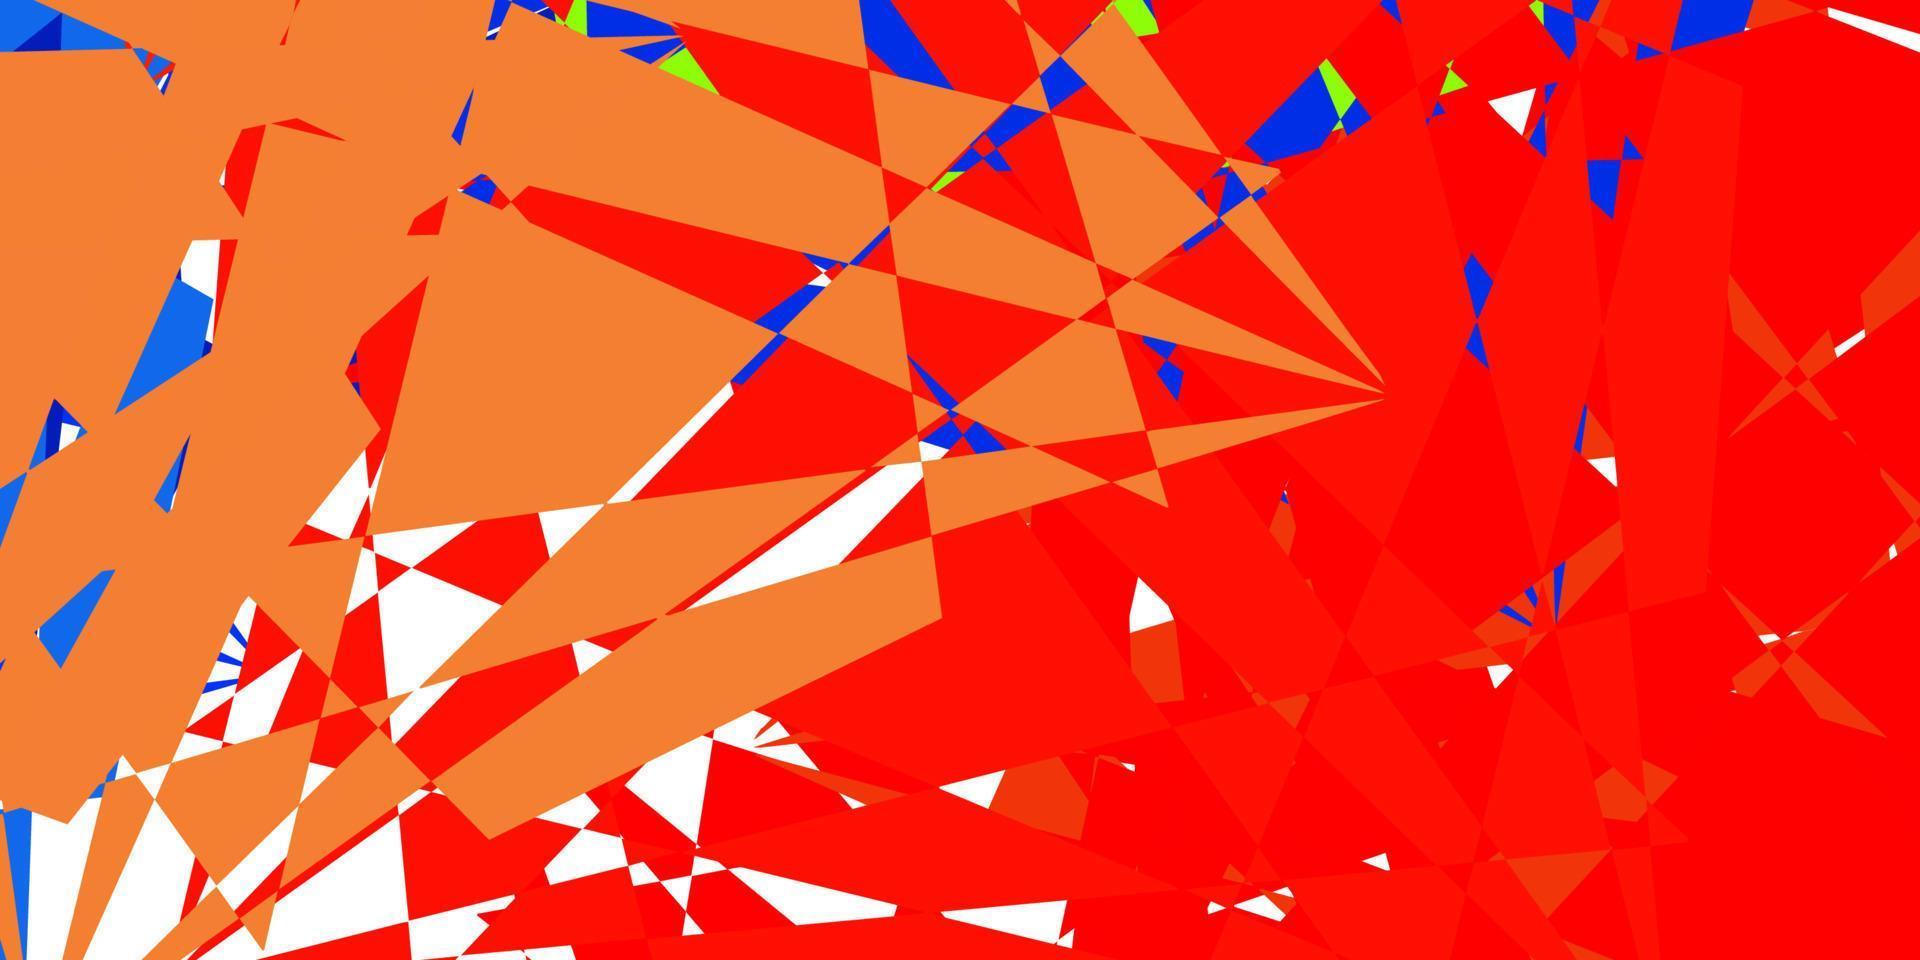 mörkblå, gul vektorbakgrund med polygonala former. vektor